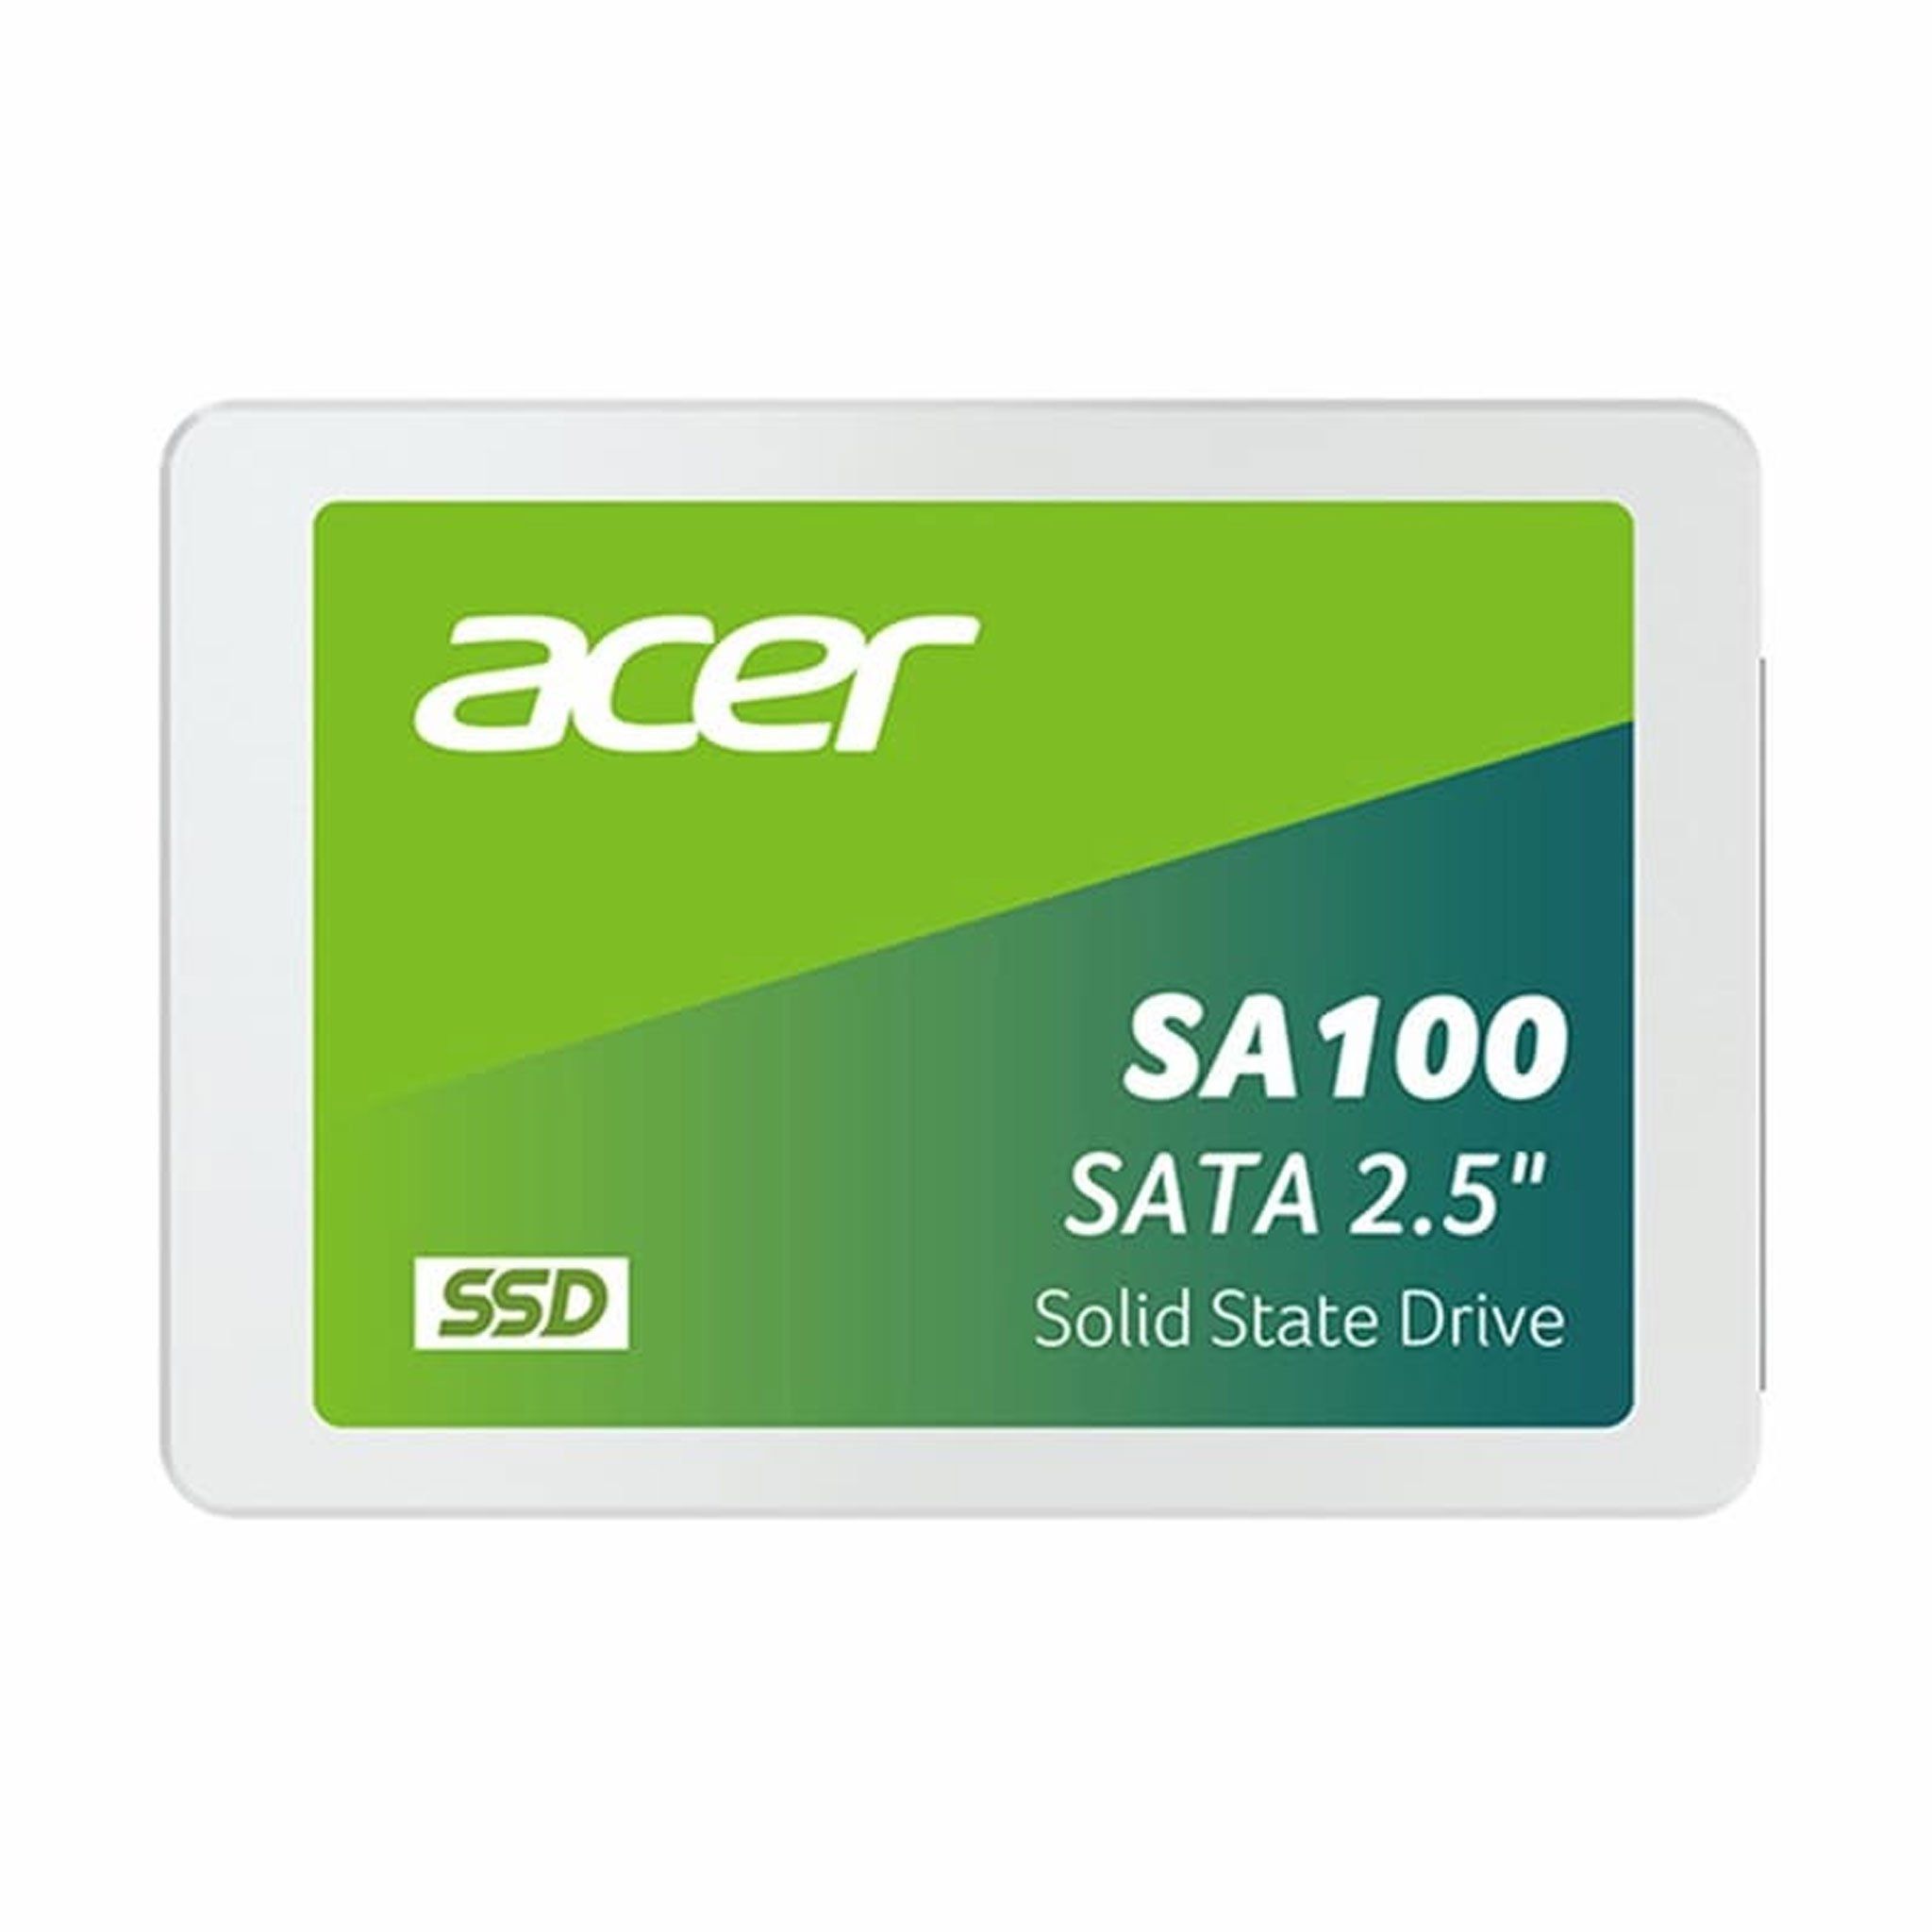 Ổ cứng SSD ACER SA100 480GB | SATA 2.5 inch (SA100-480GB)